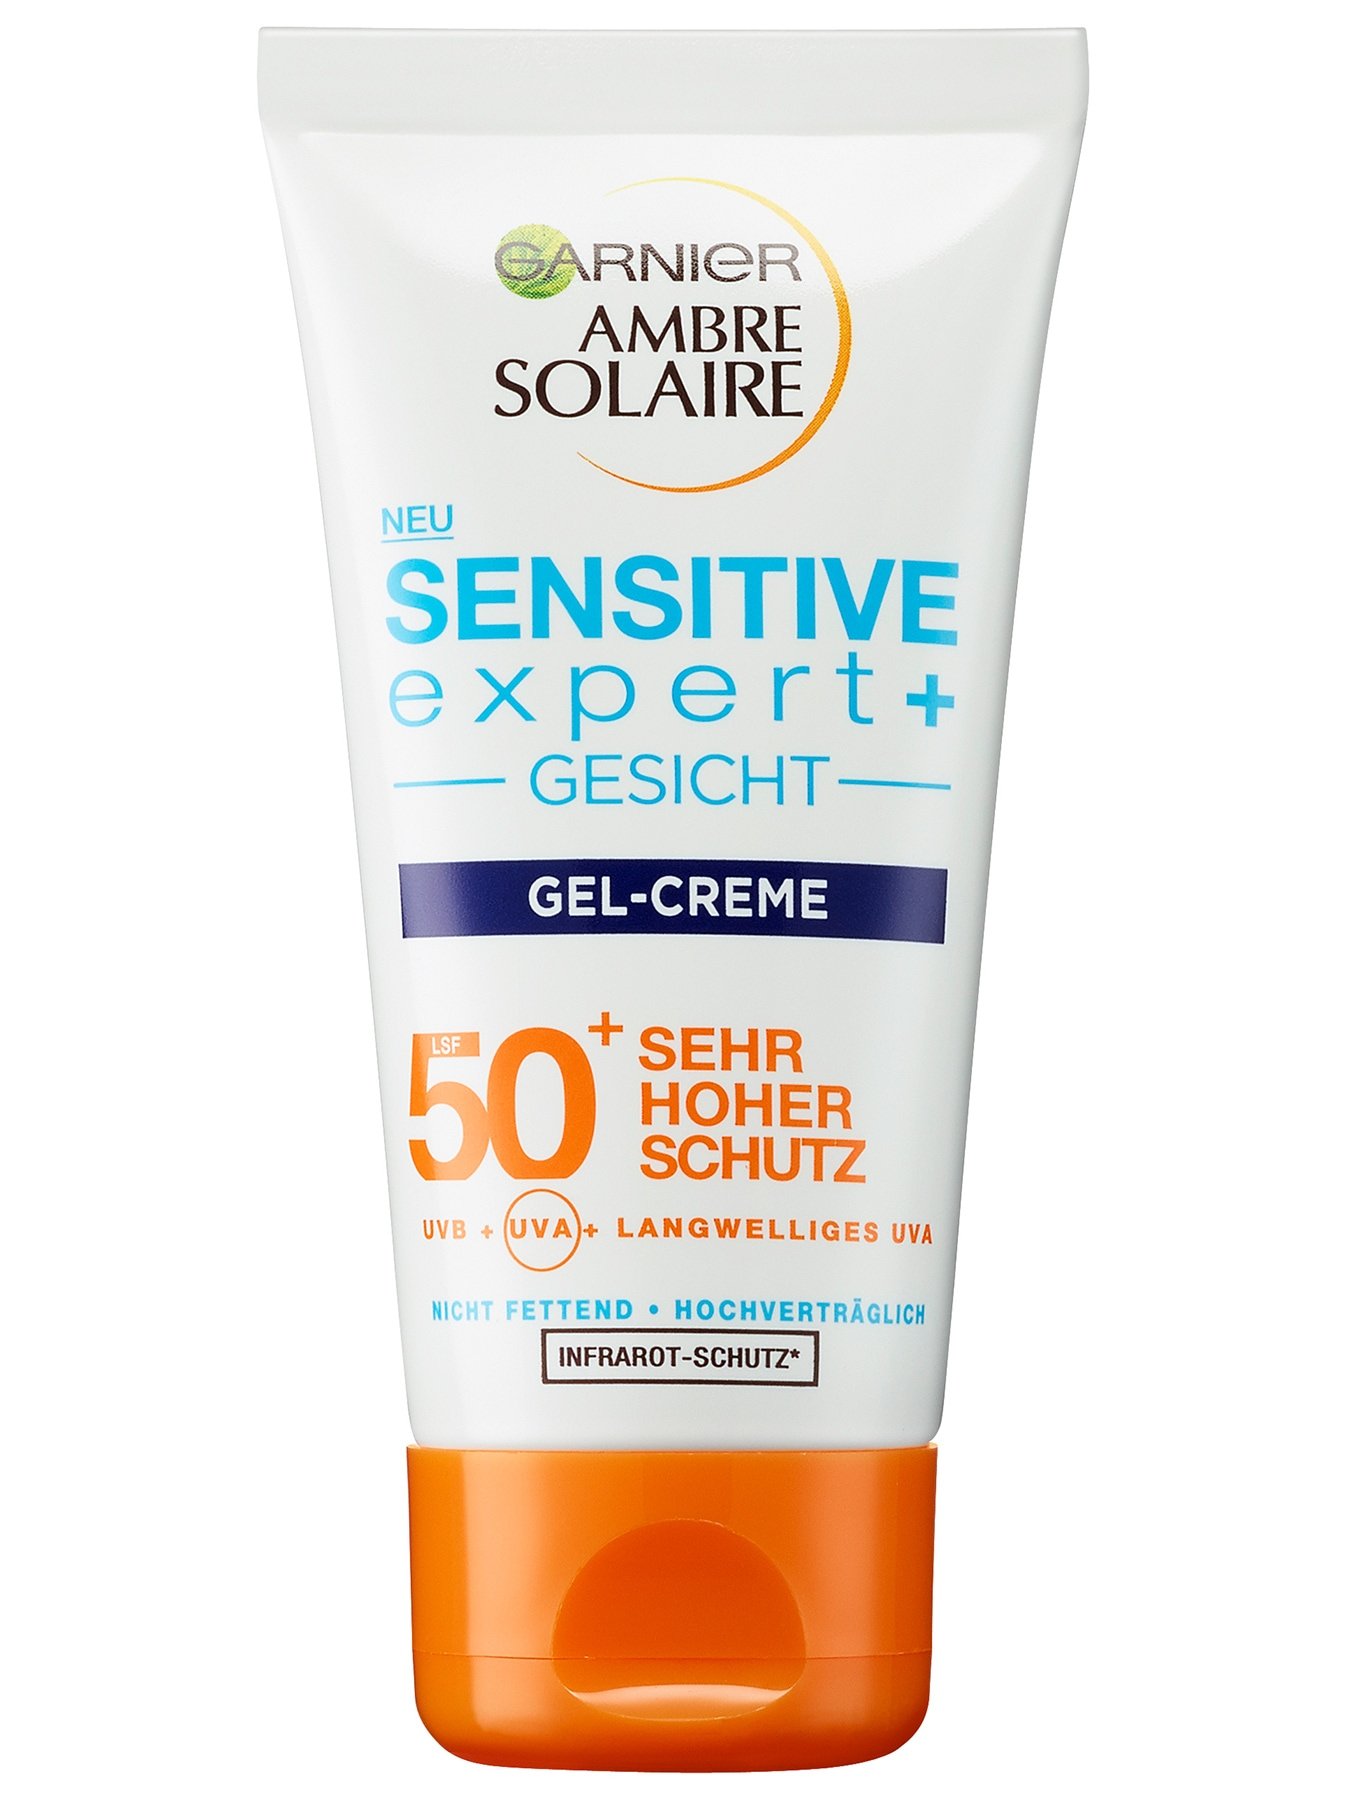 Ambre Solaire Sensitive expert+ Gesicht Gel-Creme LSF 50+ - Produktabbildung